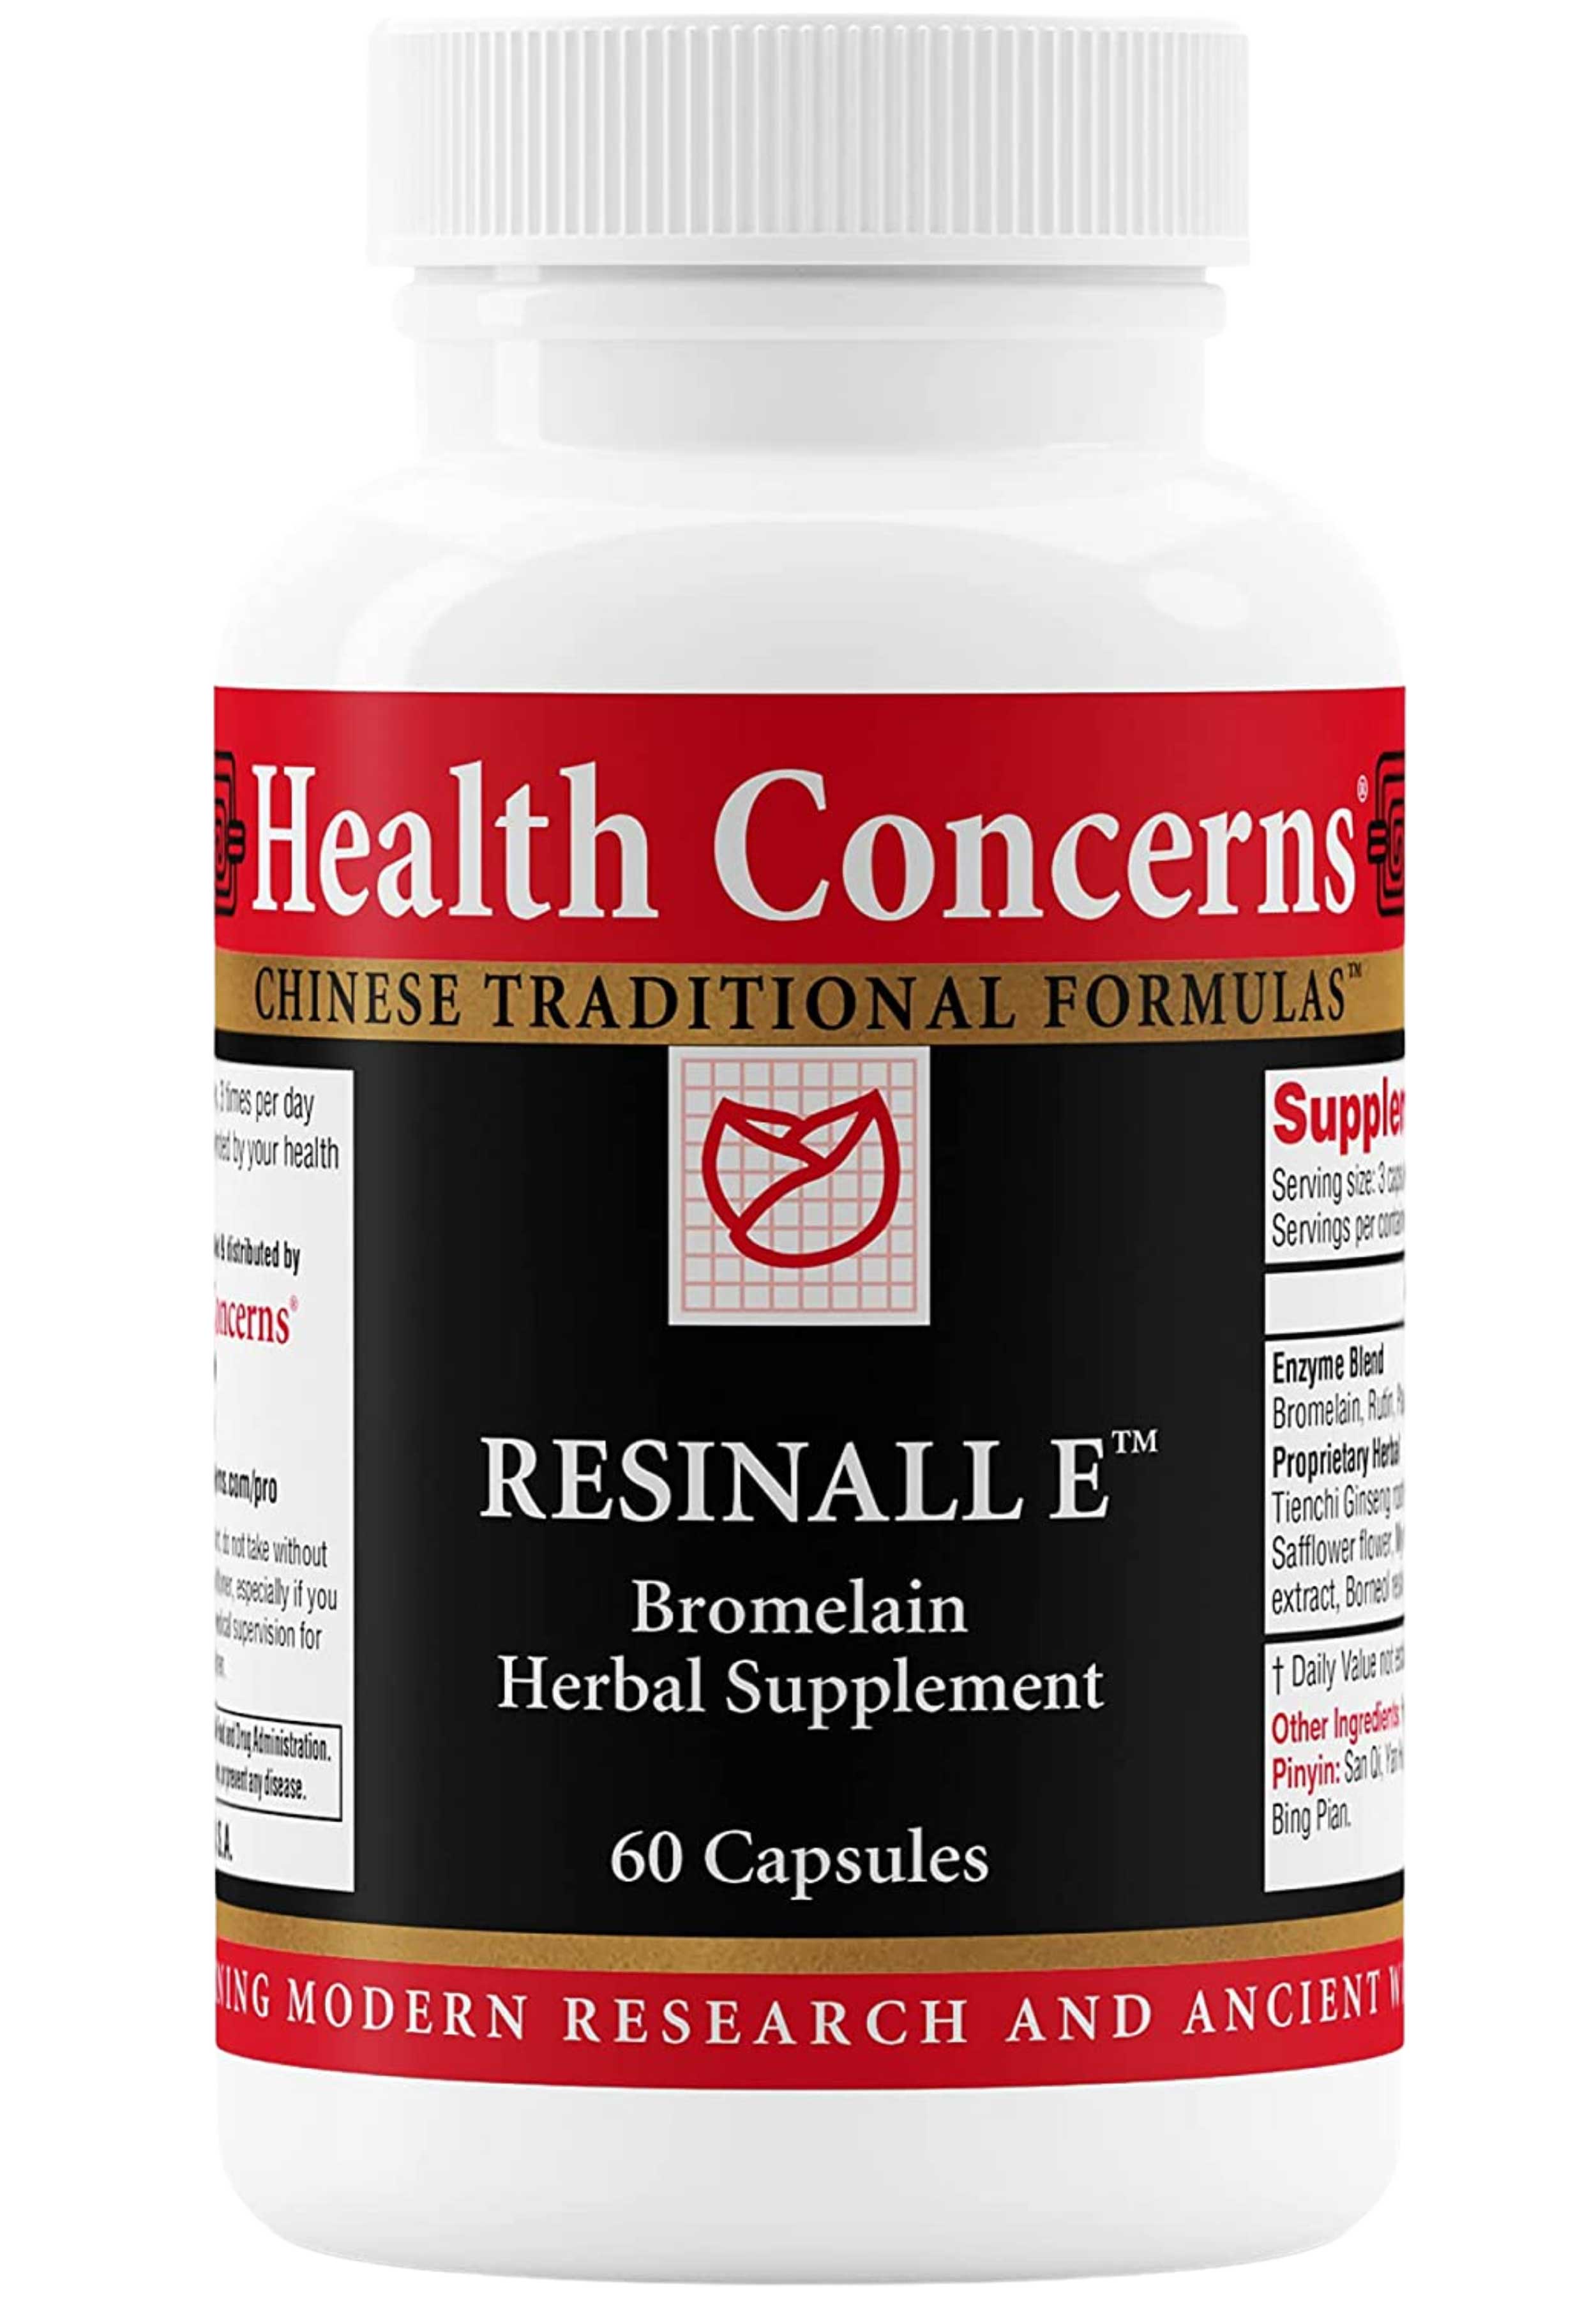 Health Concerns Resinall E